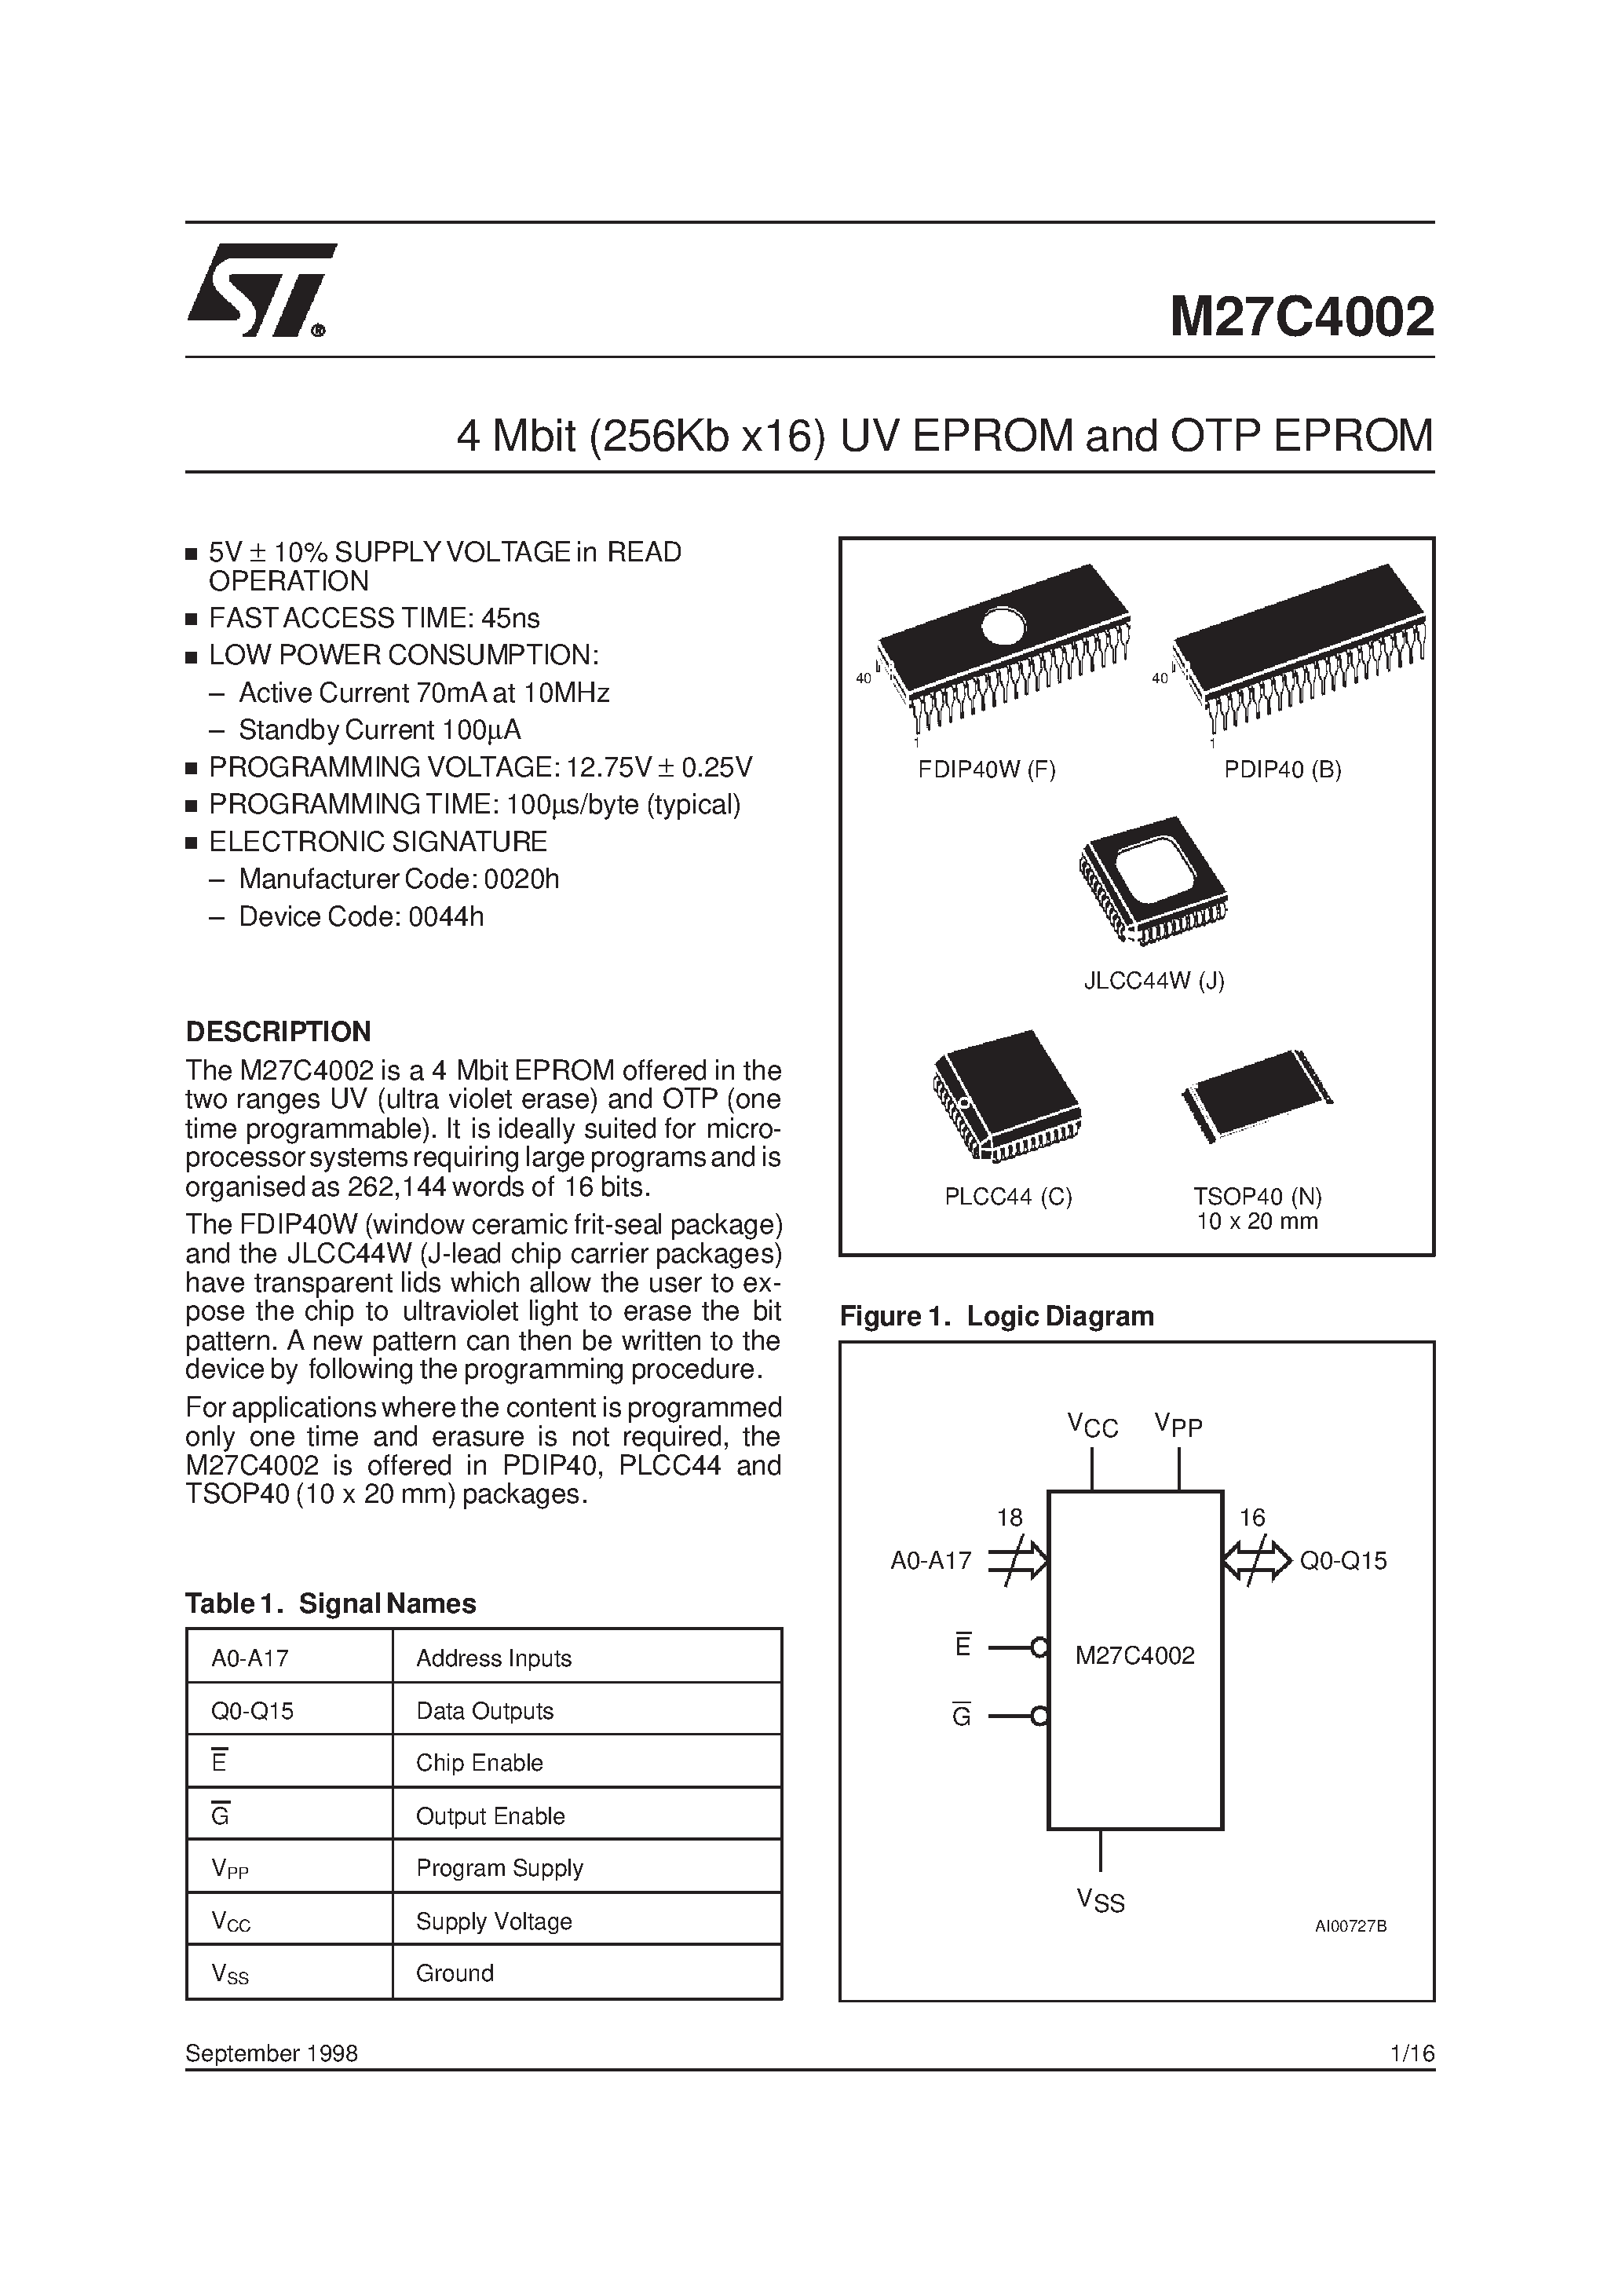 Datasheet M27C4002-10C6TR - 4 Mbit 256Kb x16 UV EPROM and OTP EPROM page 1